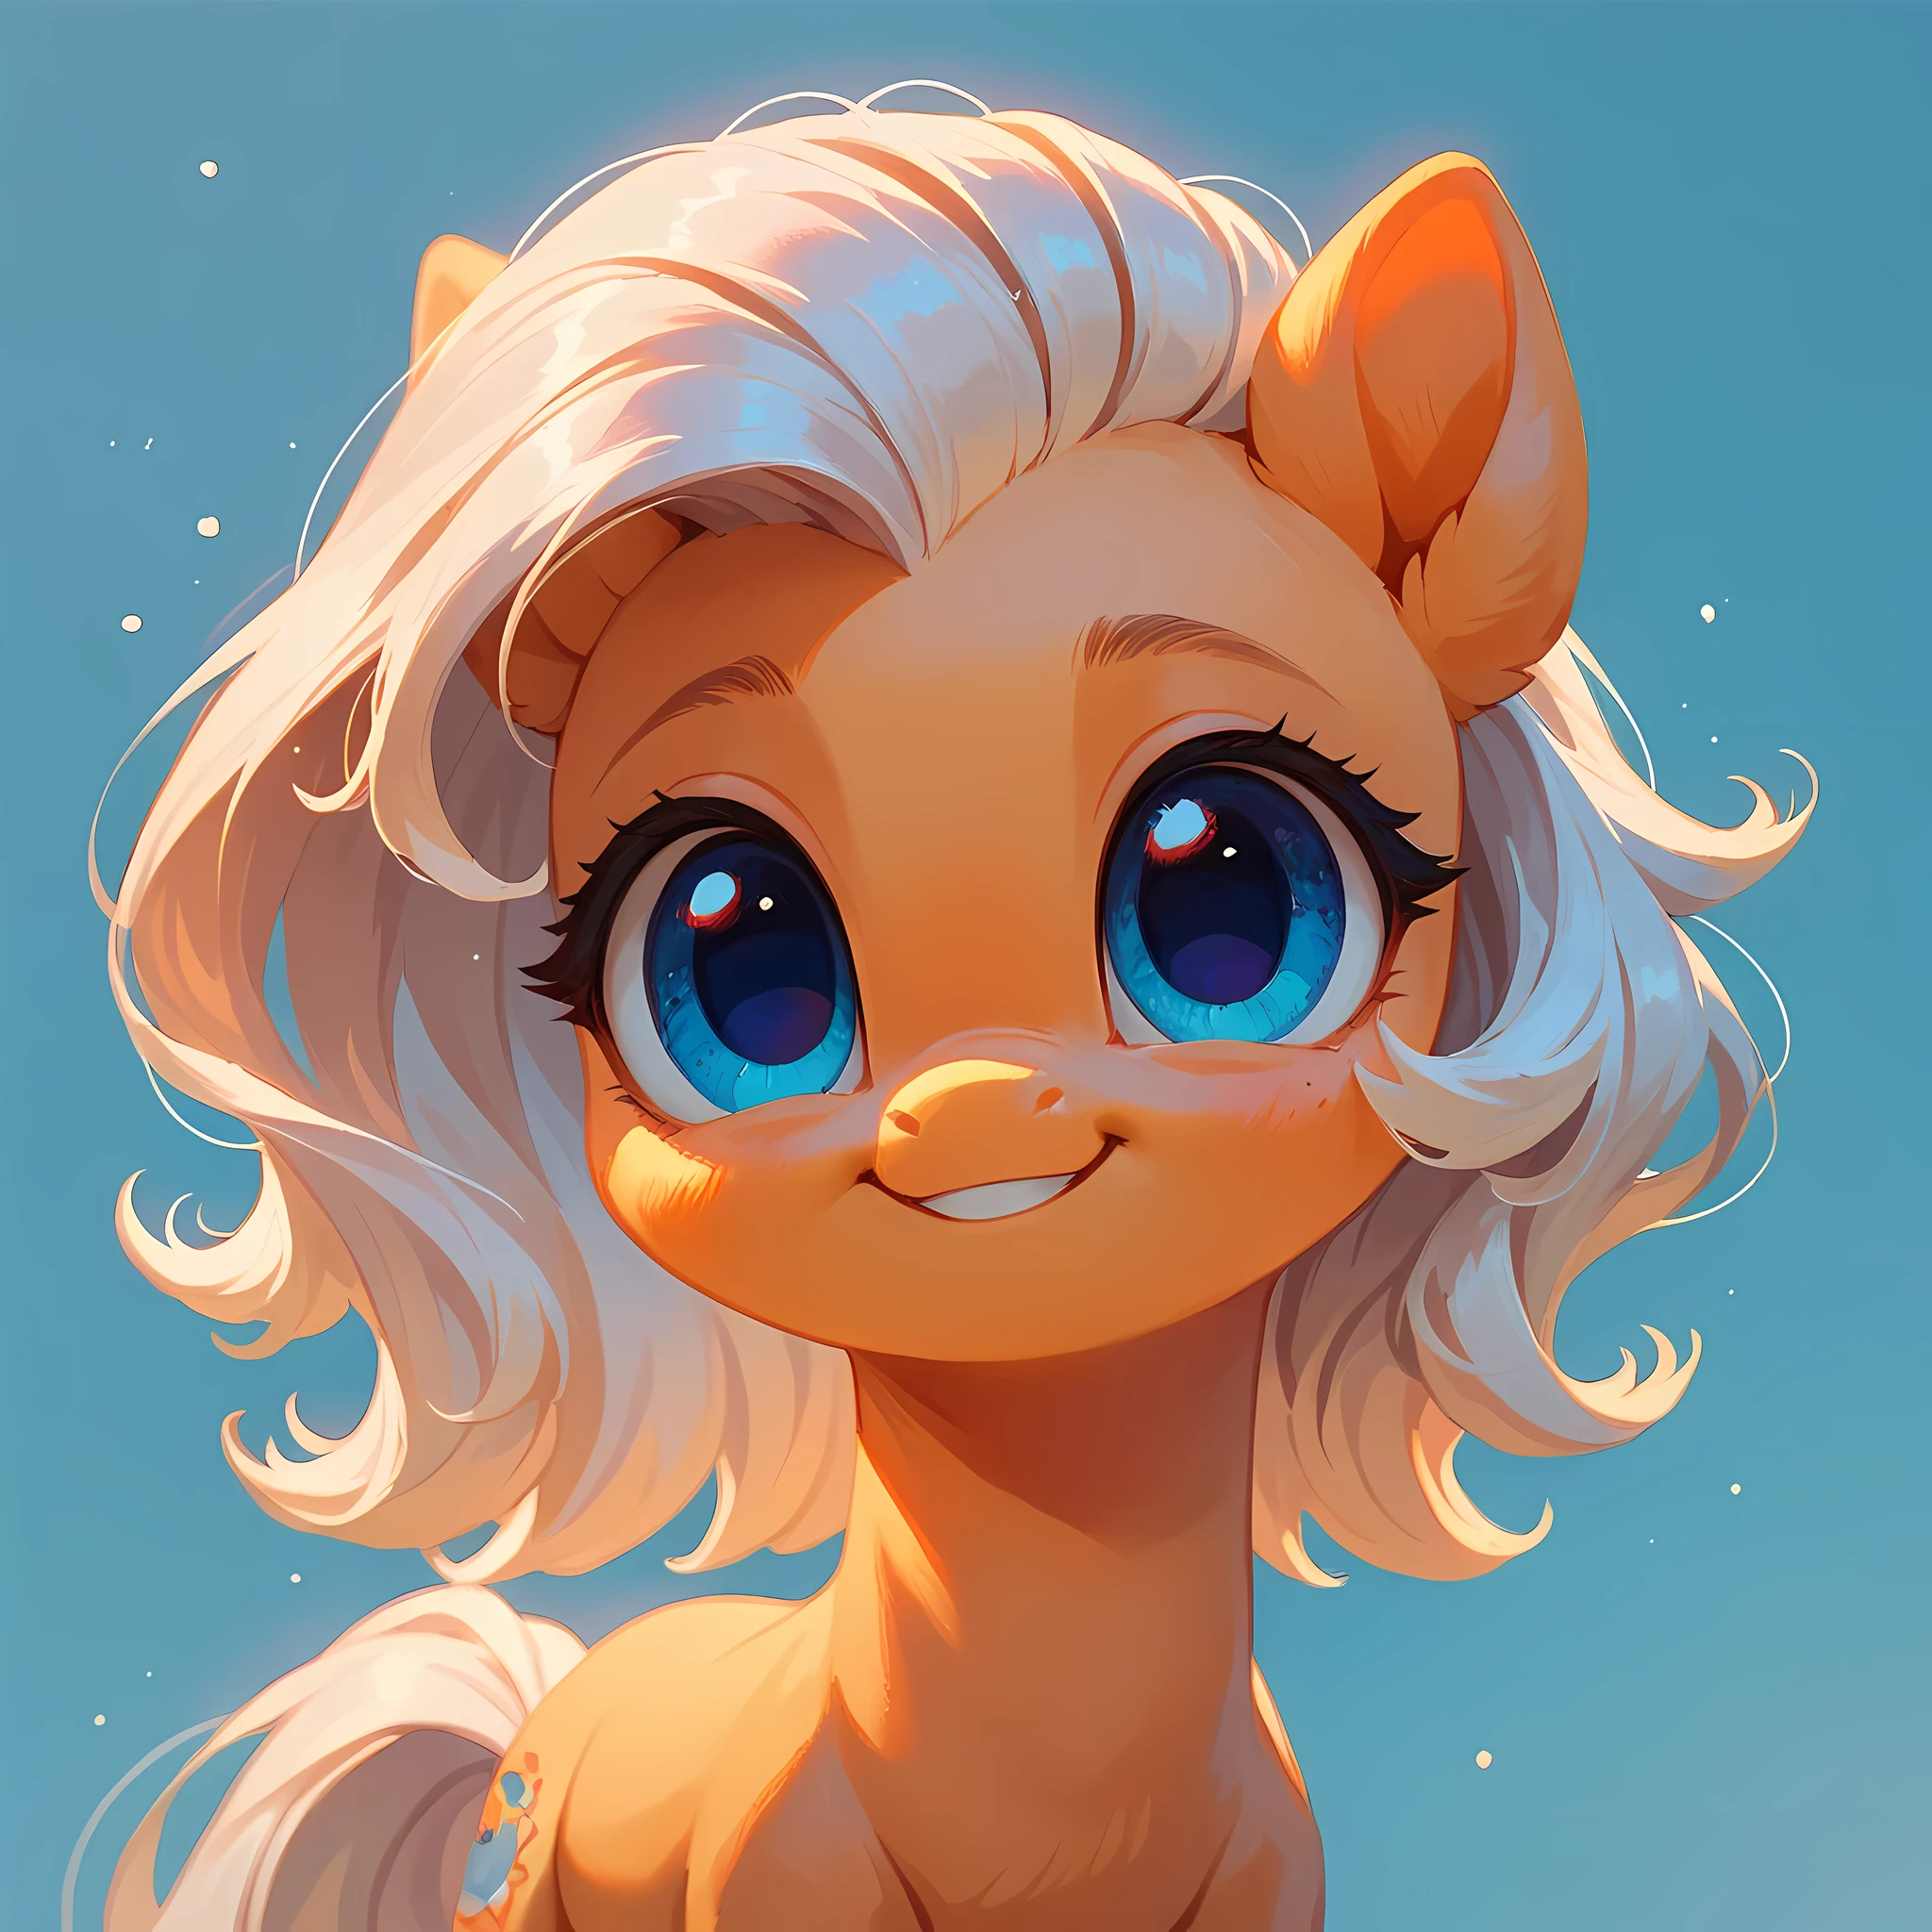 score_9, score_8_up, score_7_up, adorable pony,white mane, blue eyes, cute background